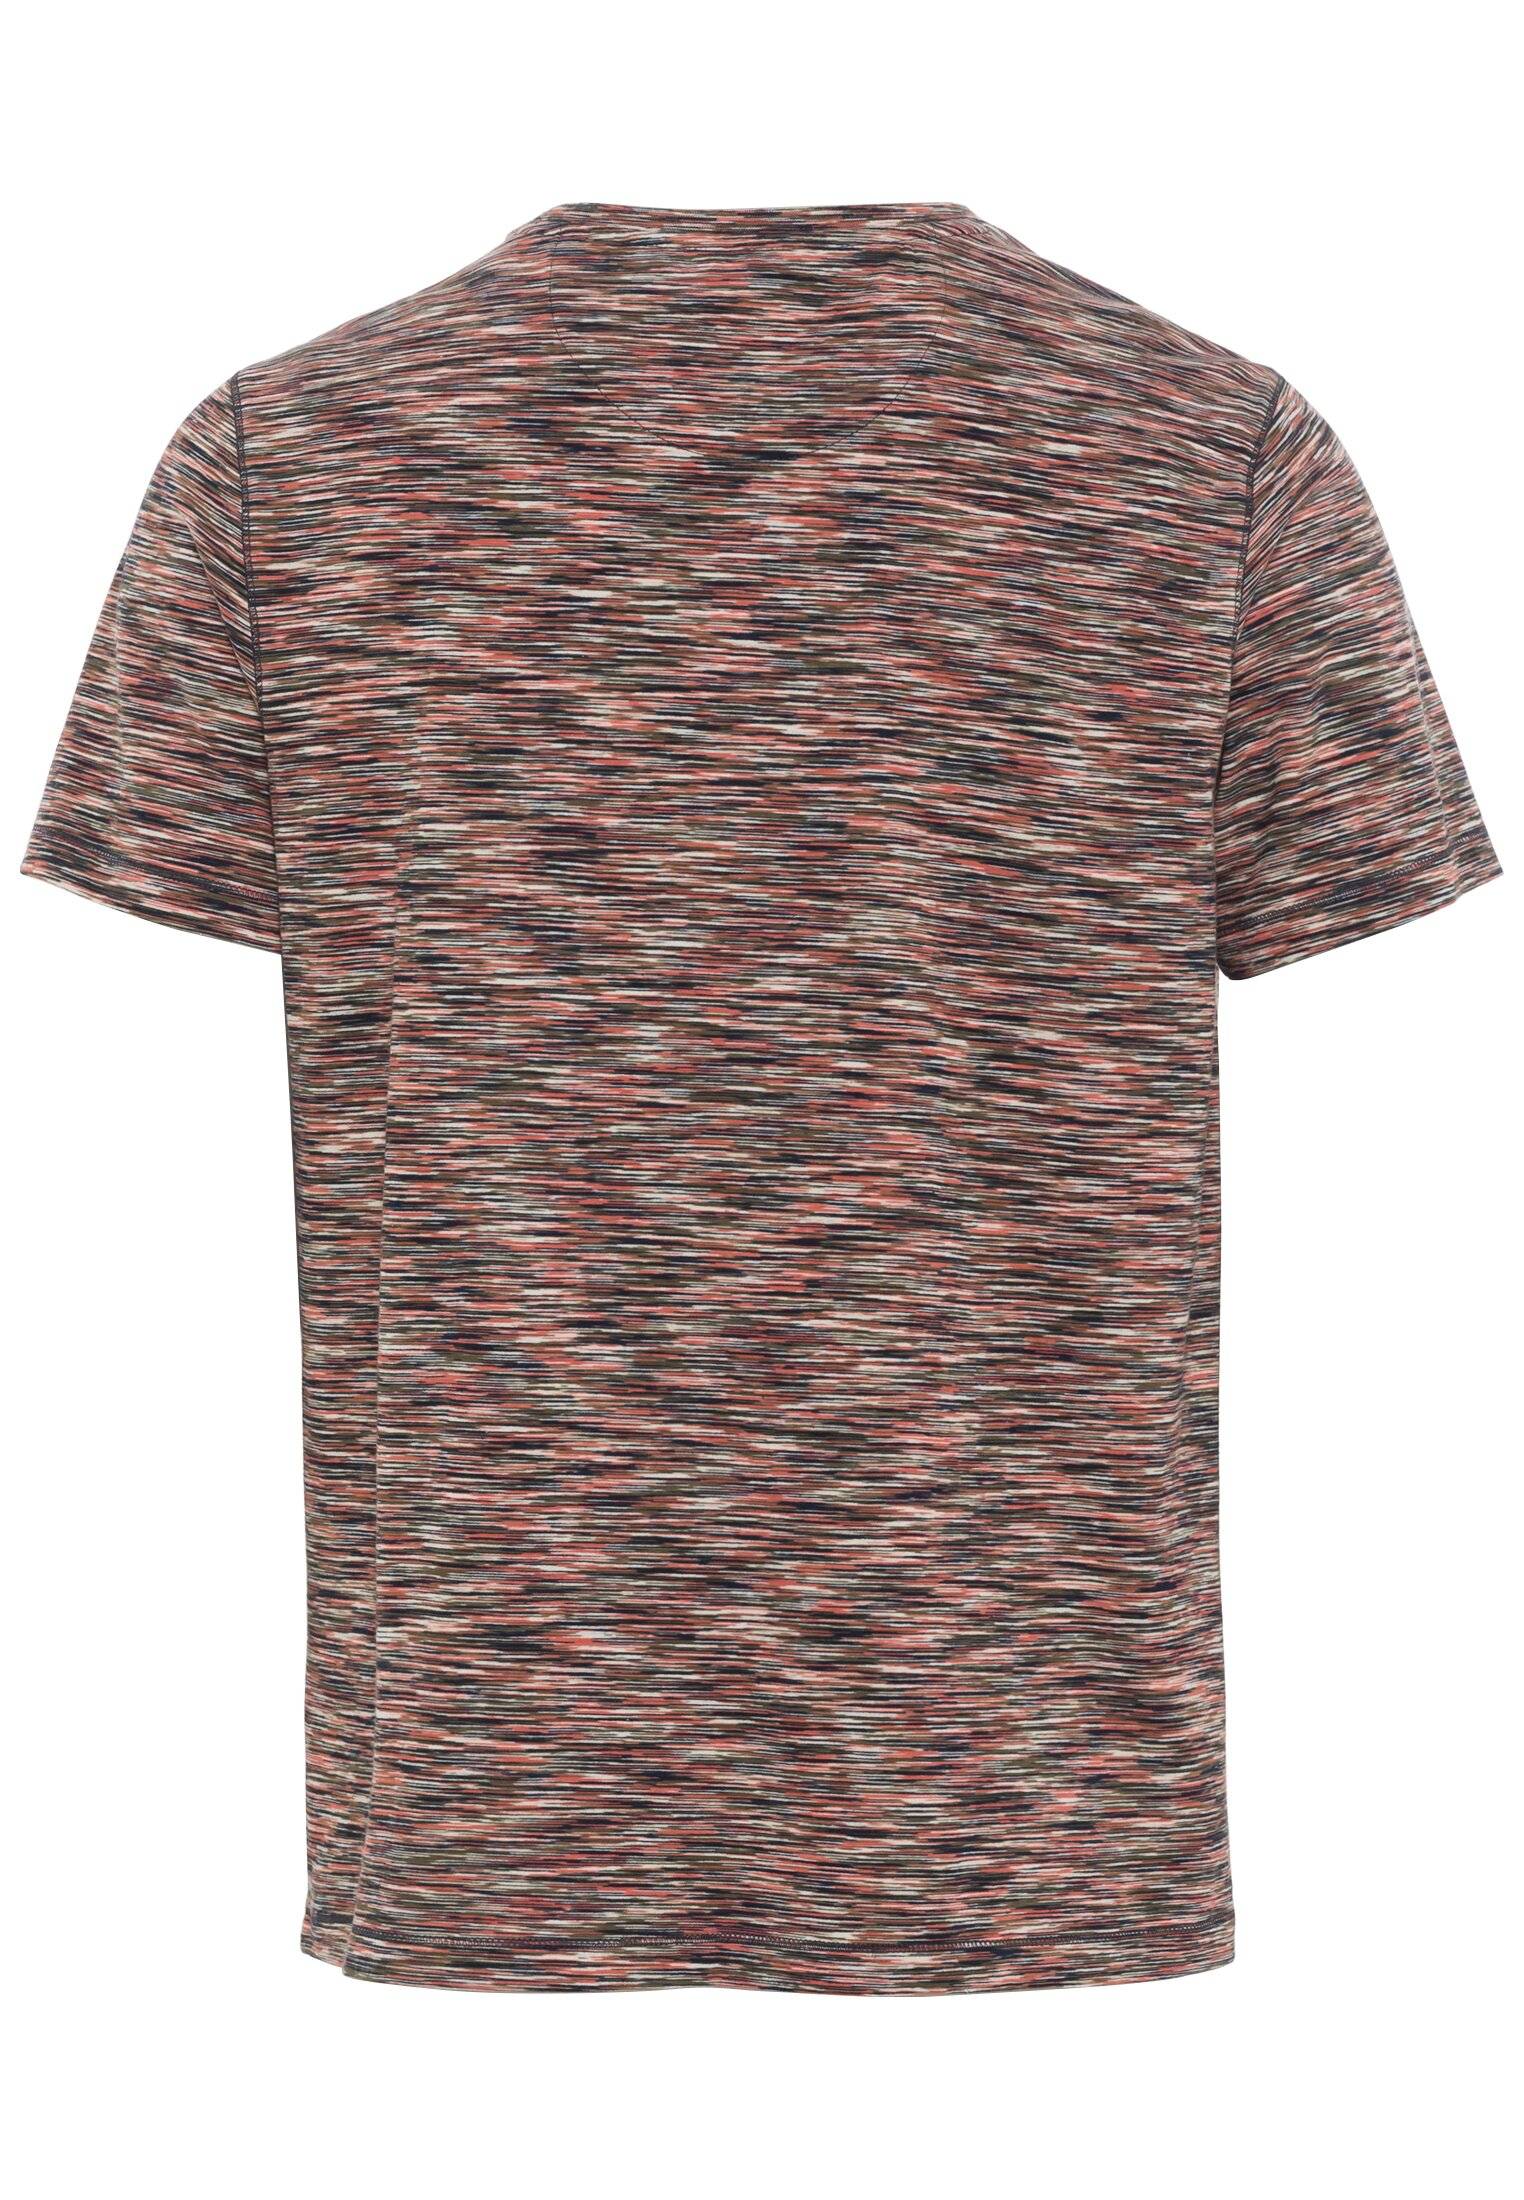 Мужская футболка Camel Active, коралловая, цвет коралловый, размер 50 - фото 2